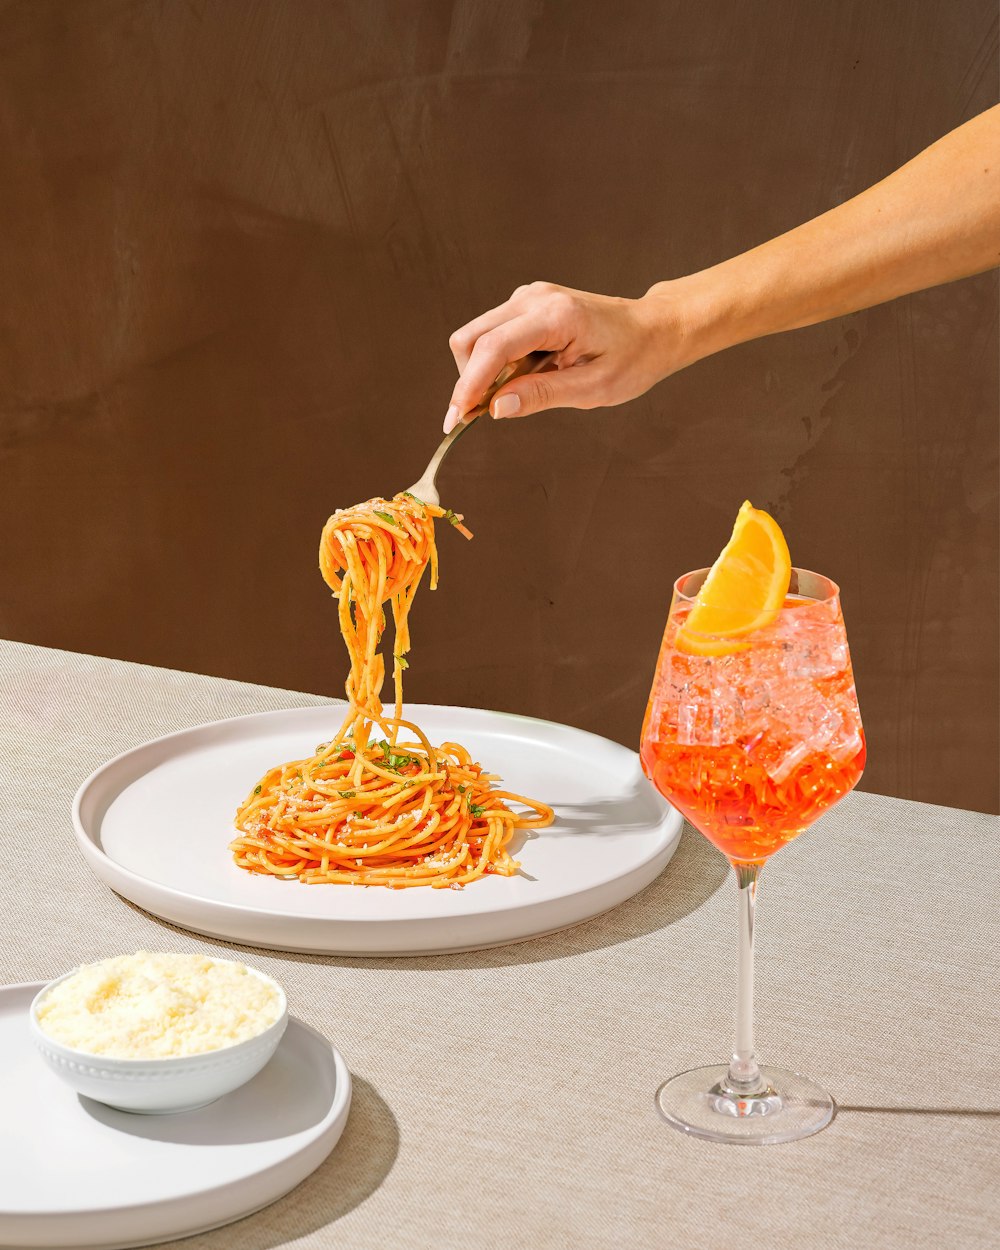 Una persona sta mangiando spaghetti su un piatto